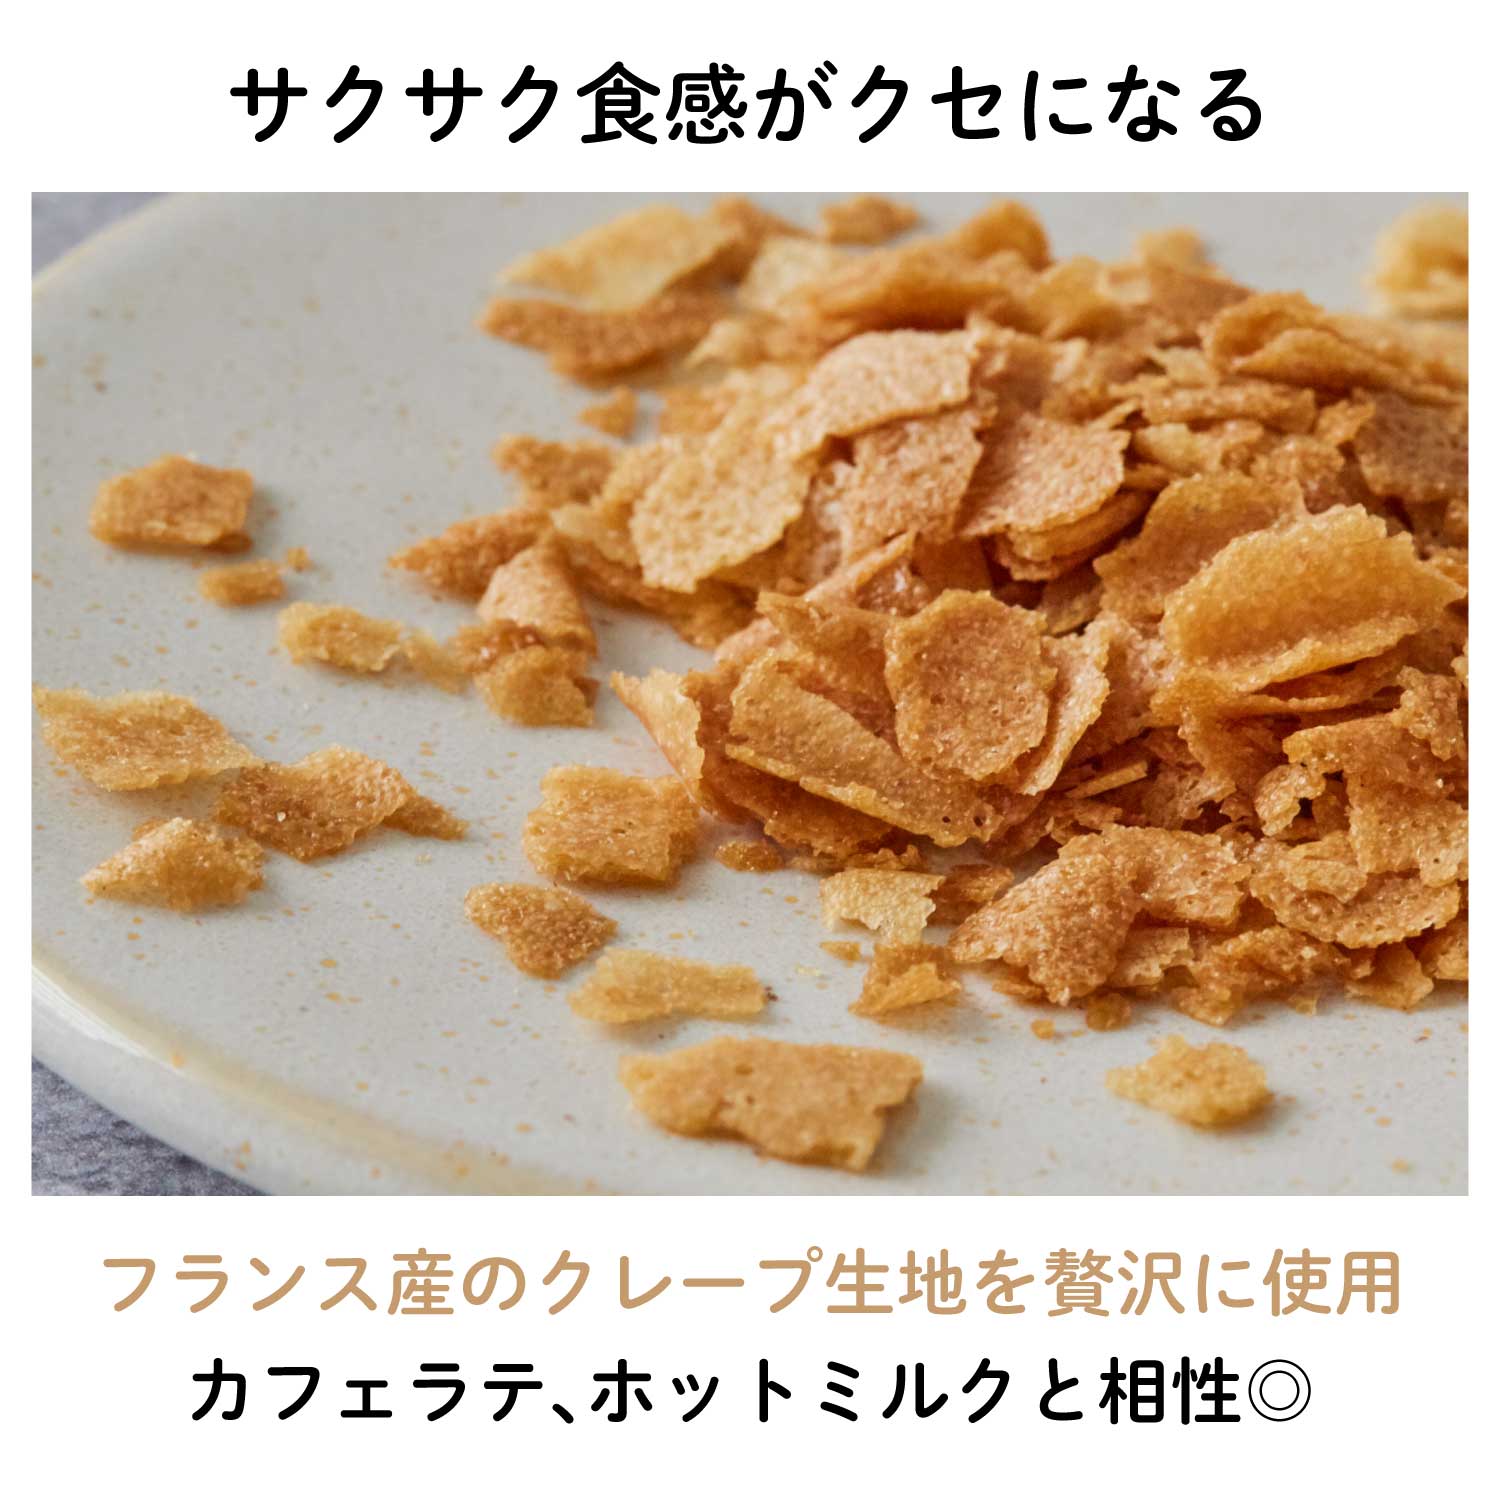 【賞味期限5月17日】プラリネチョコレート サクサク・オレンジ 130g